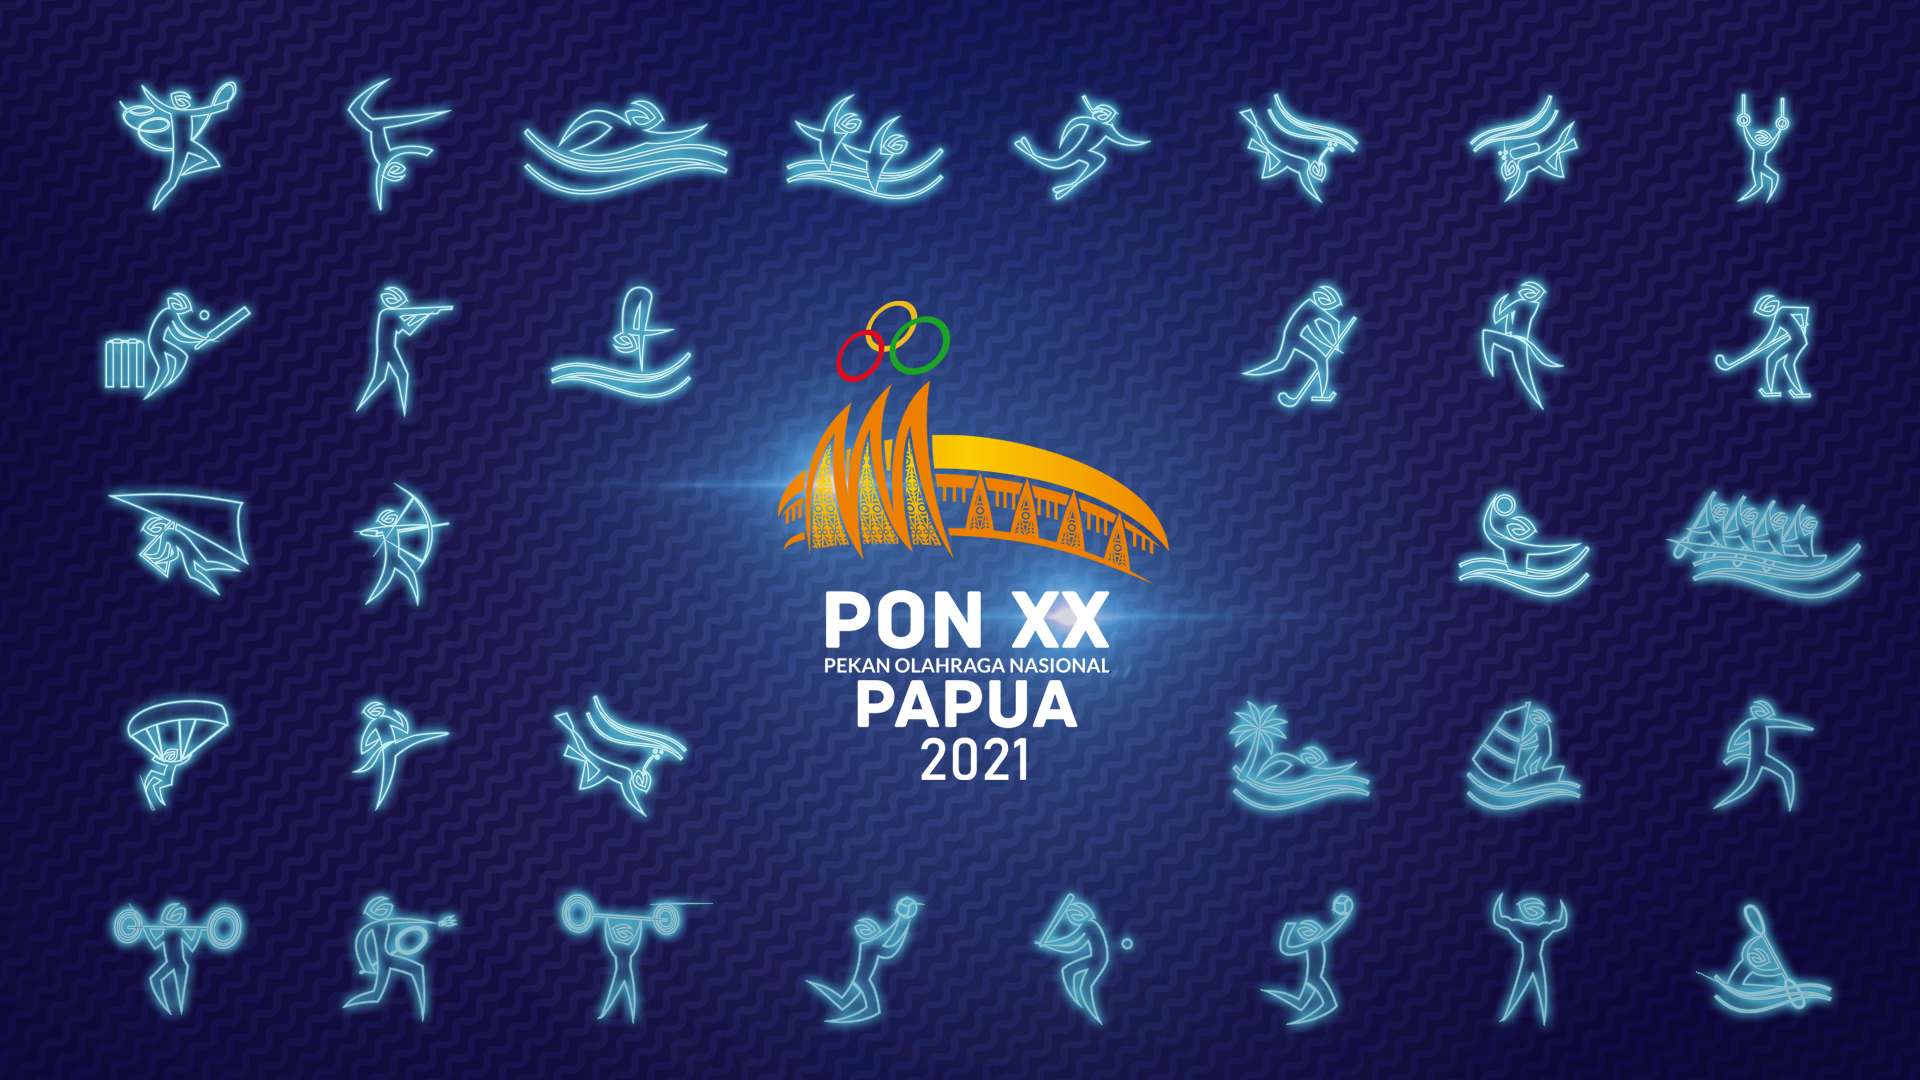 Skor Indonesia Dukung Penuh PON XX Papua 2021